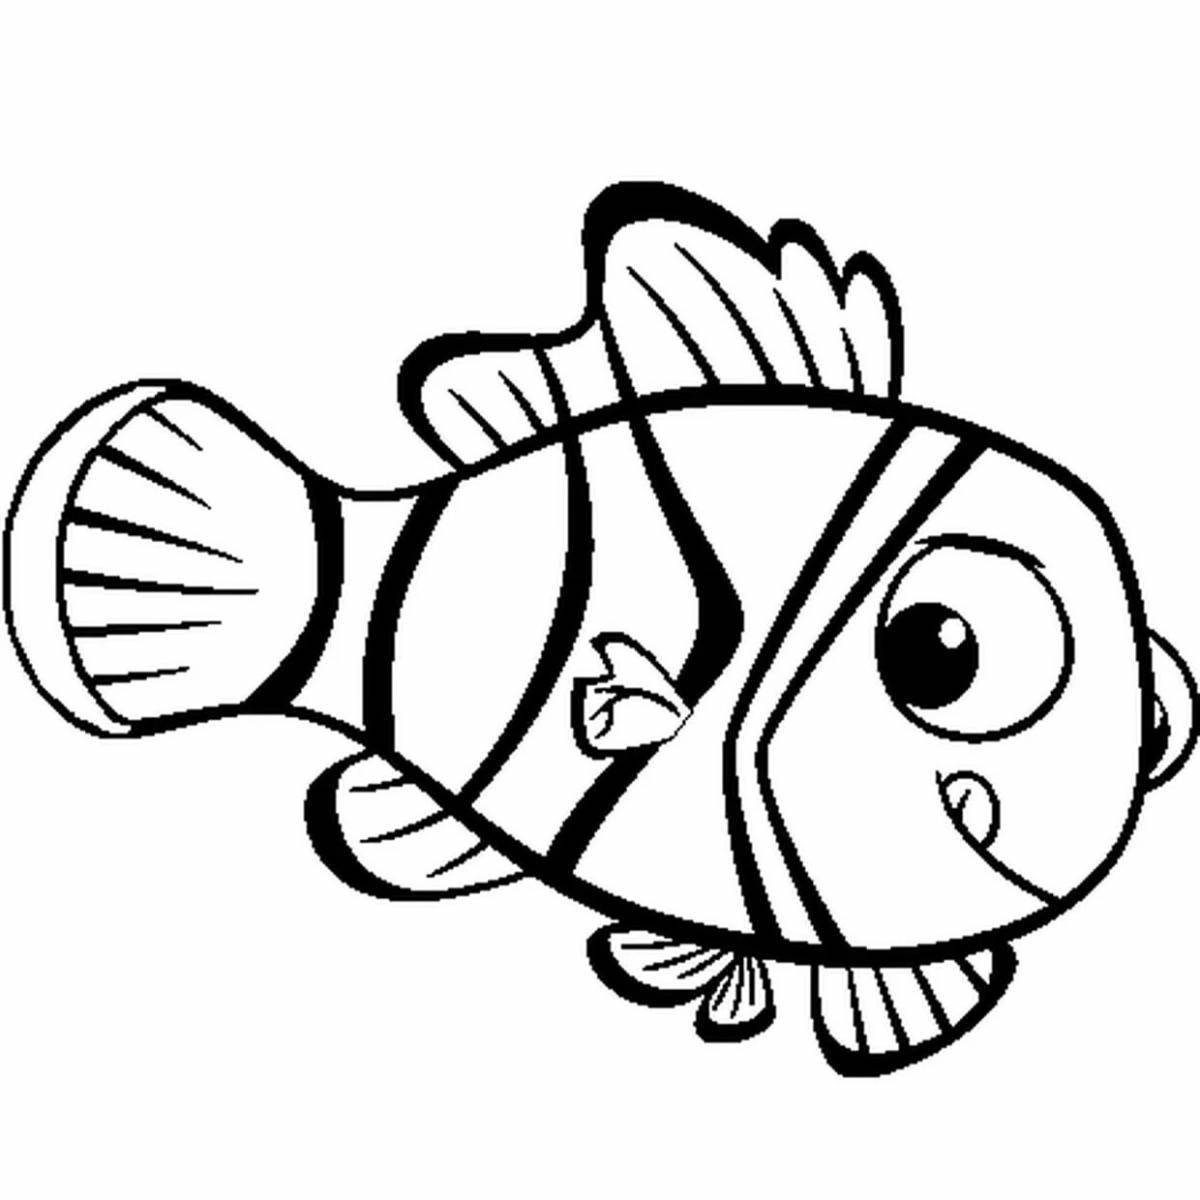 Coloring ball fish